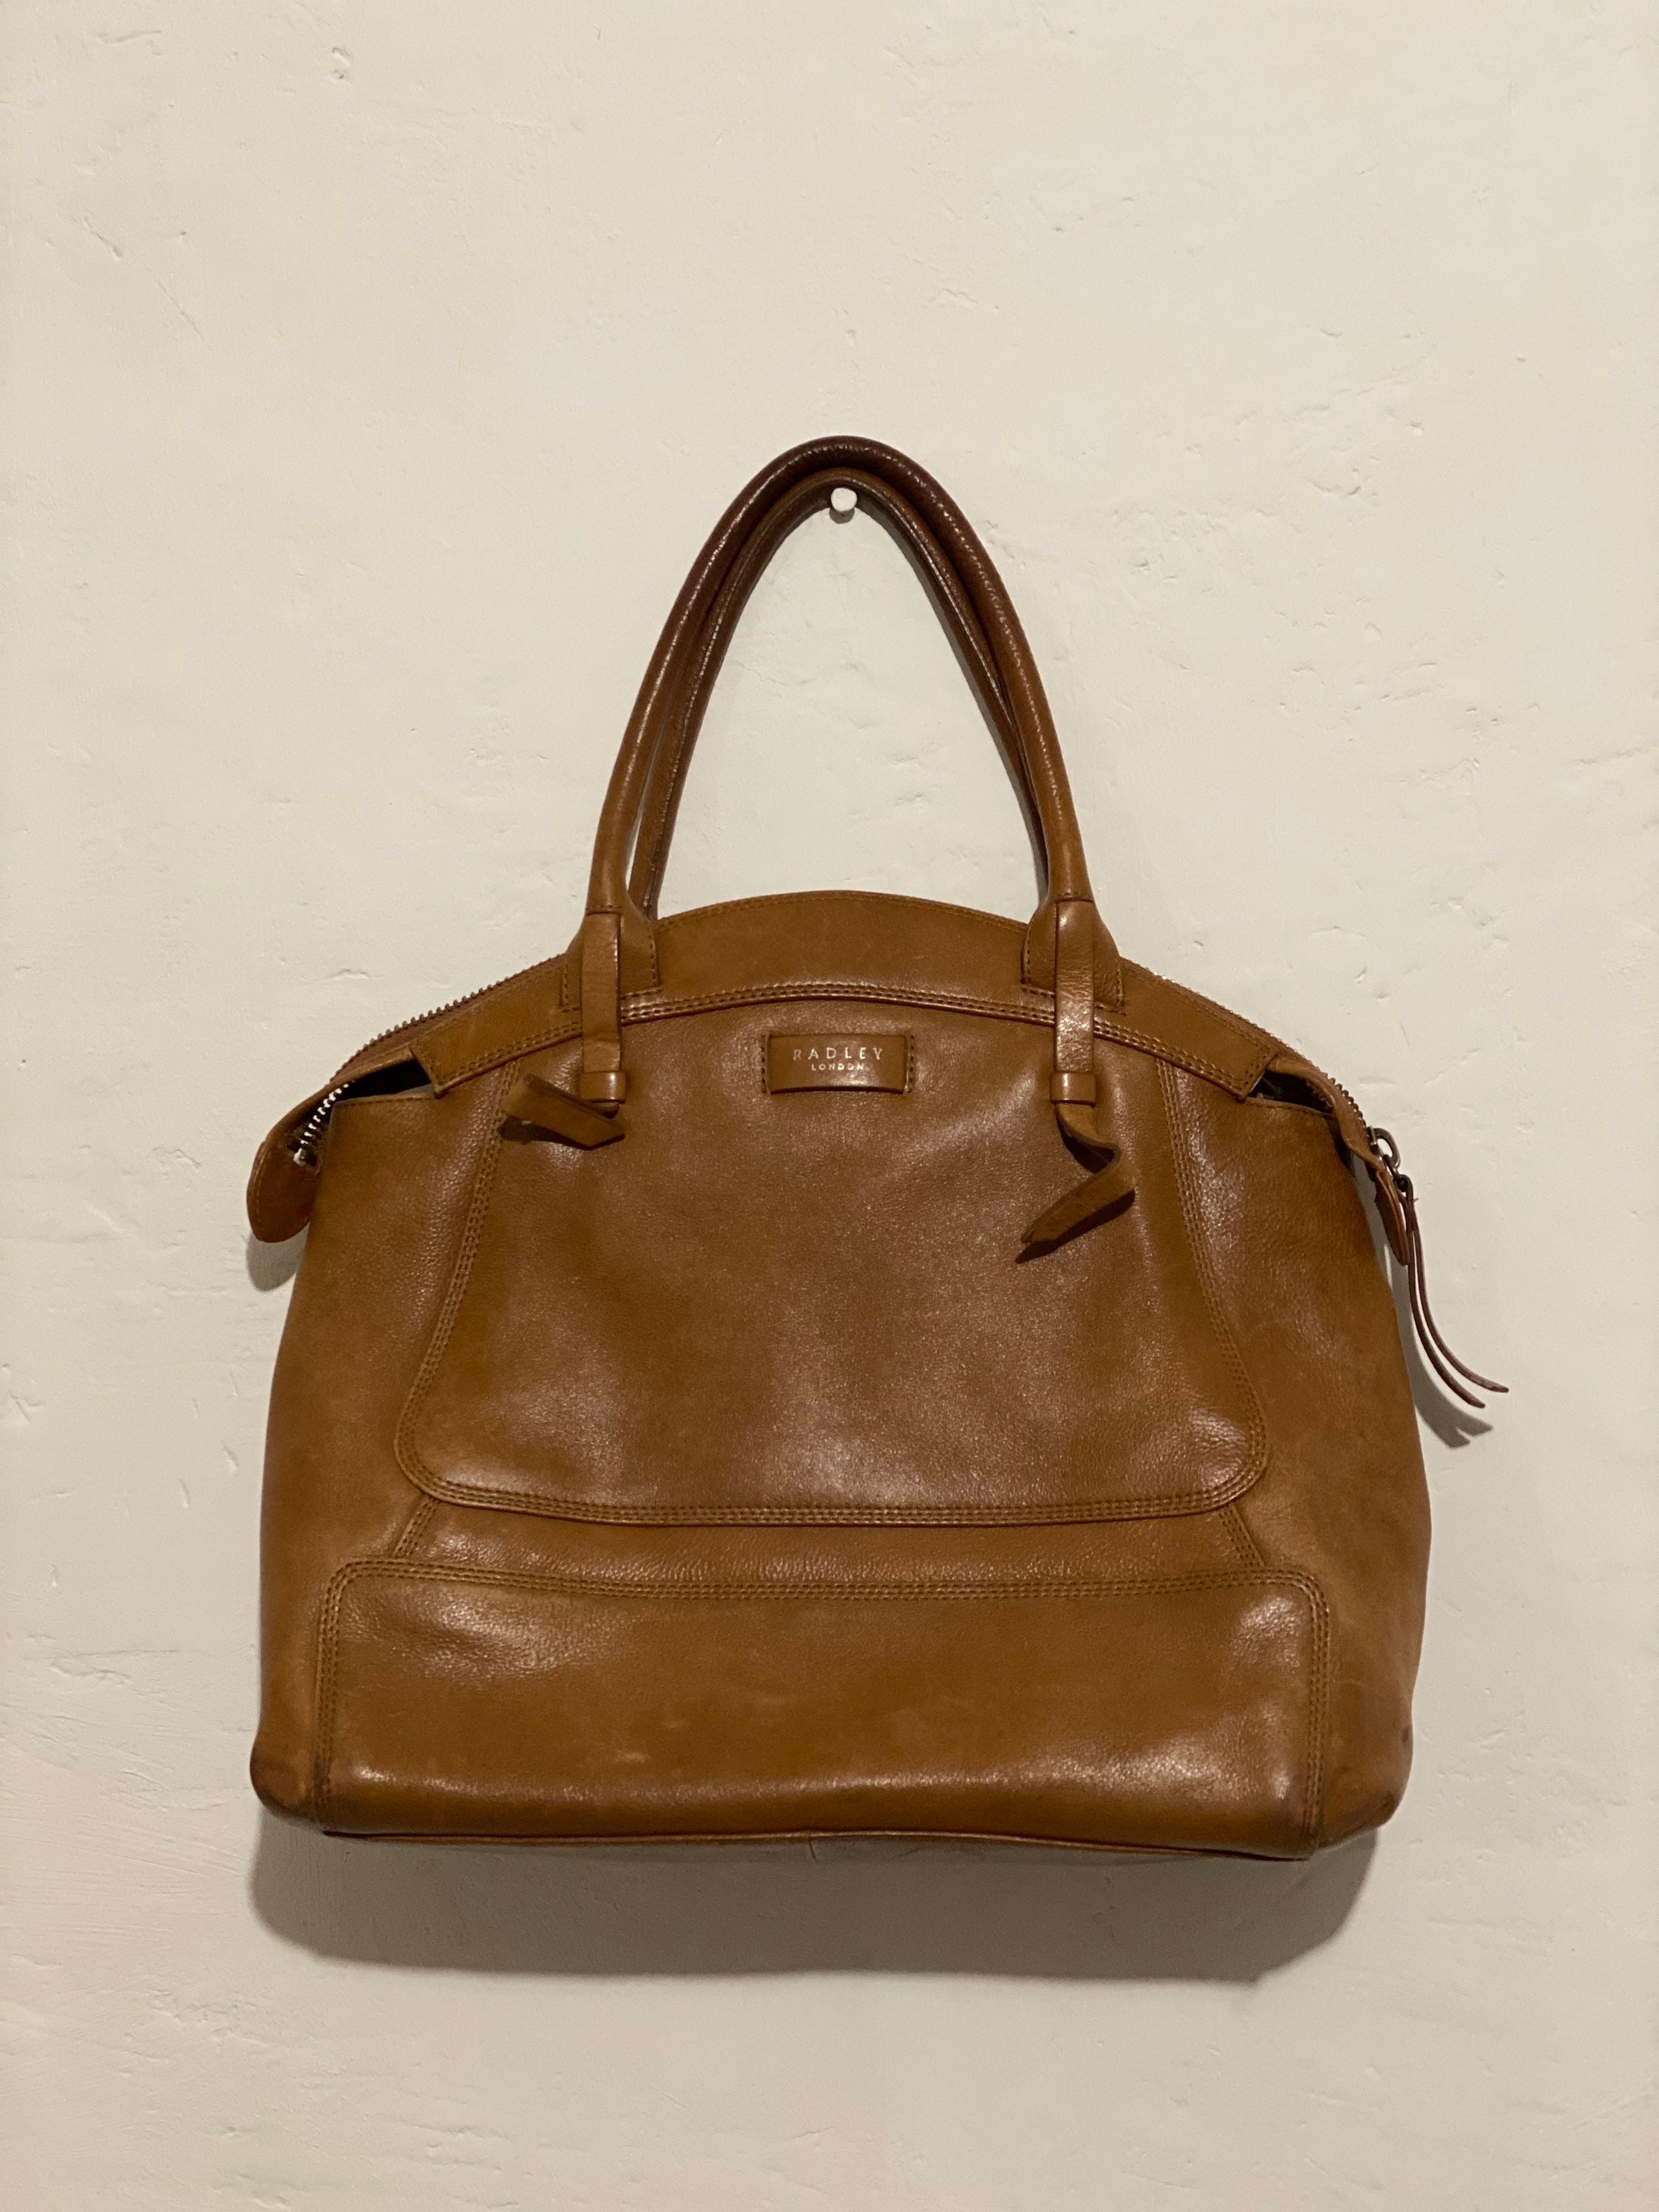 Radley Bag Brown Leather Padley messenger bag Vintage | Etsy